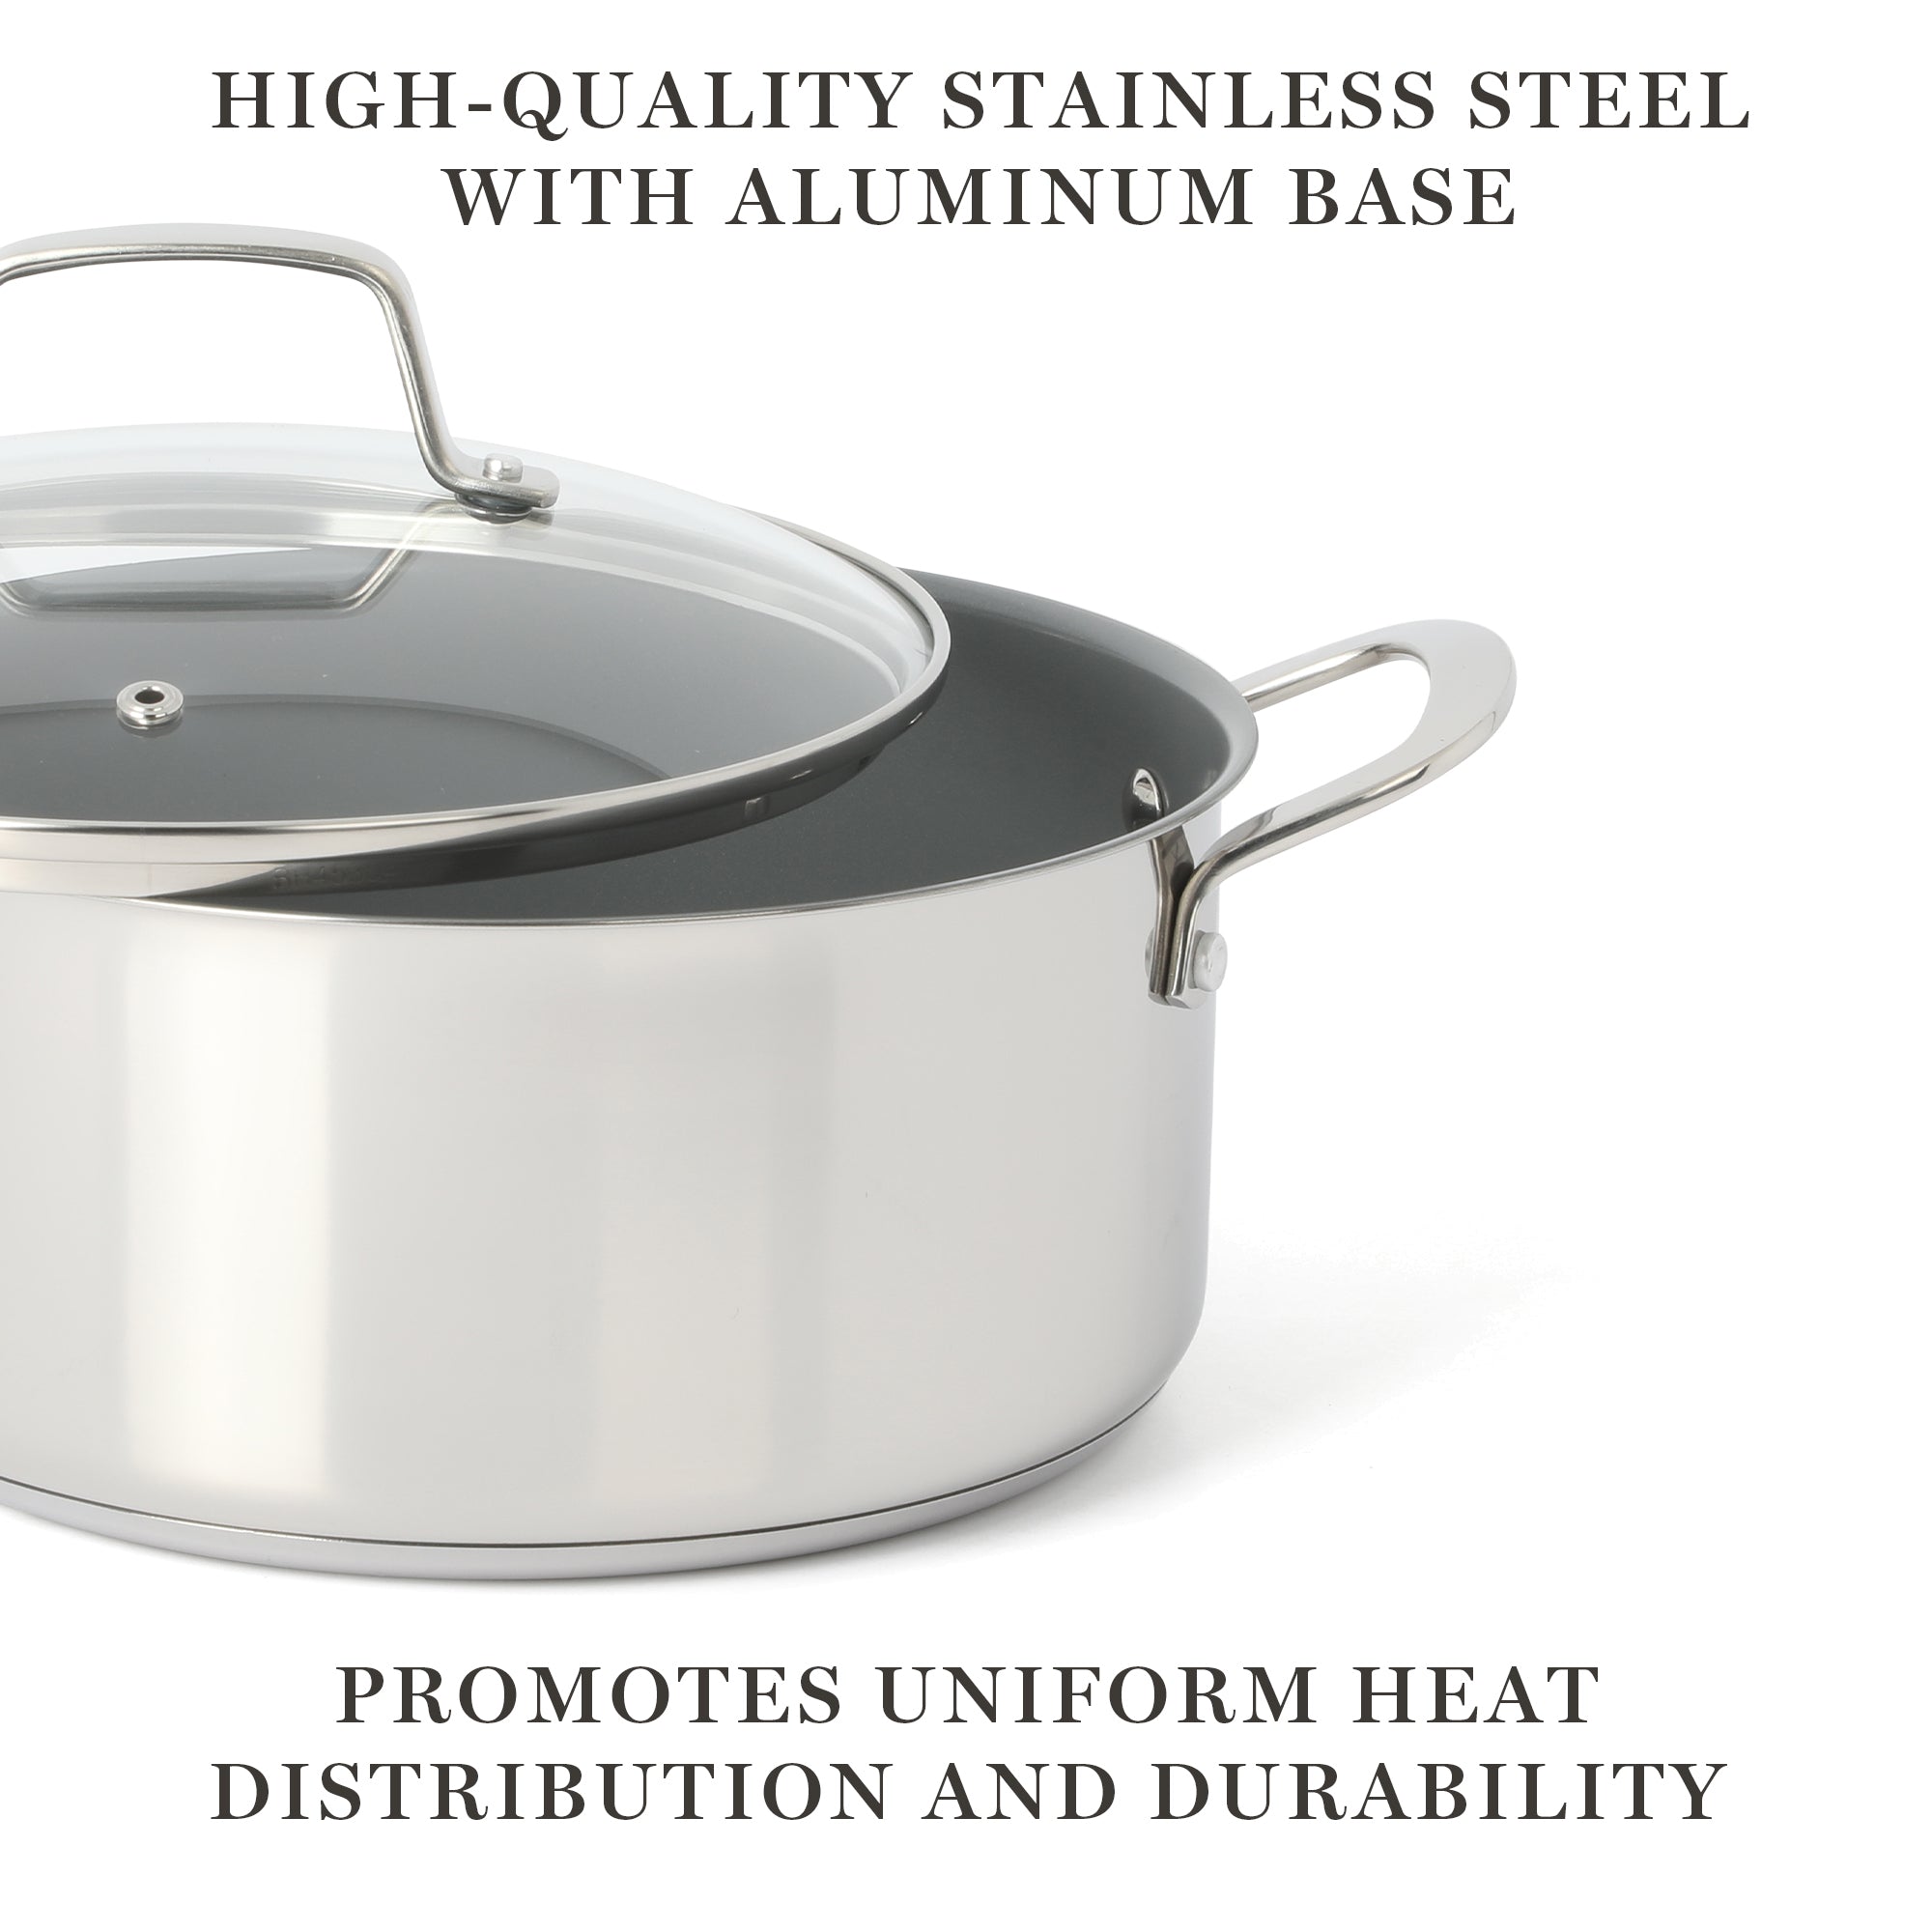 Martha Stewart Delaroux 10-Piece Stainless Steel Cookware Set w/ Ceram